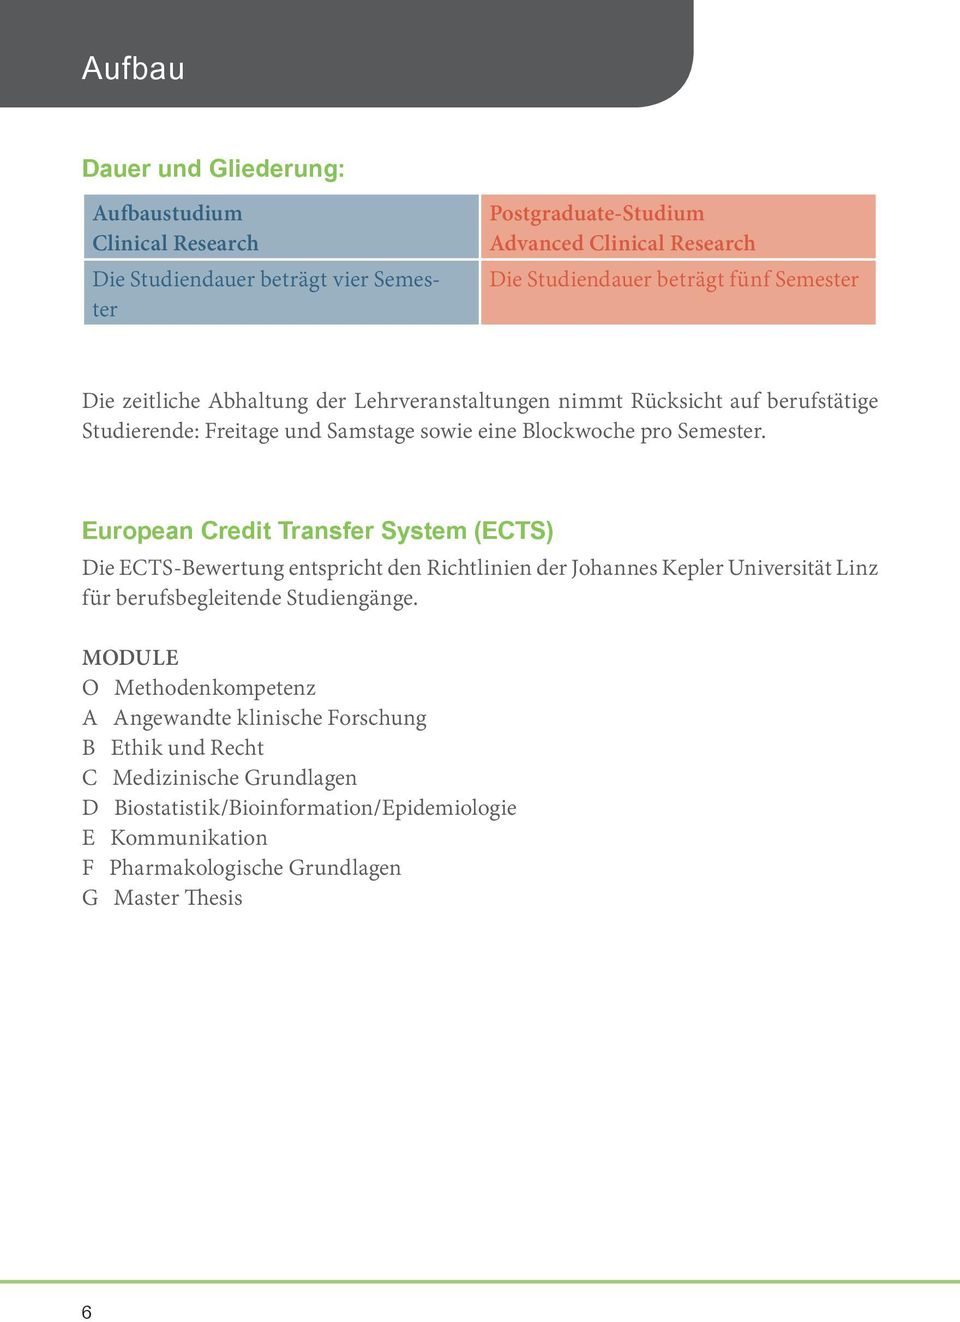 European Credit Transfer System (ECTS) Die ECTS-Bewertung entspricht den Richtlinien der Johannes Kepler Universität Linz für berufsbegleitende Studiengänge.